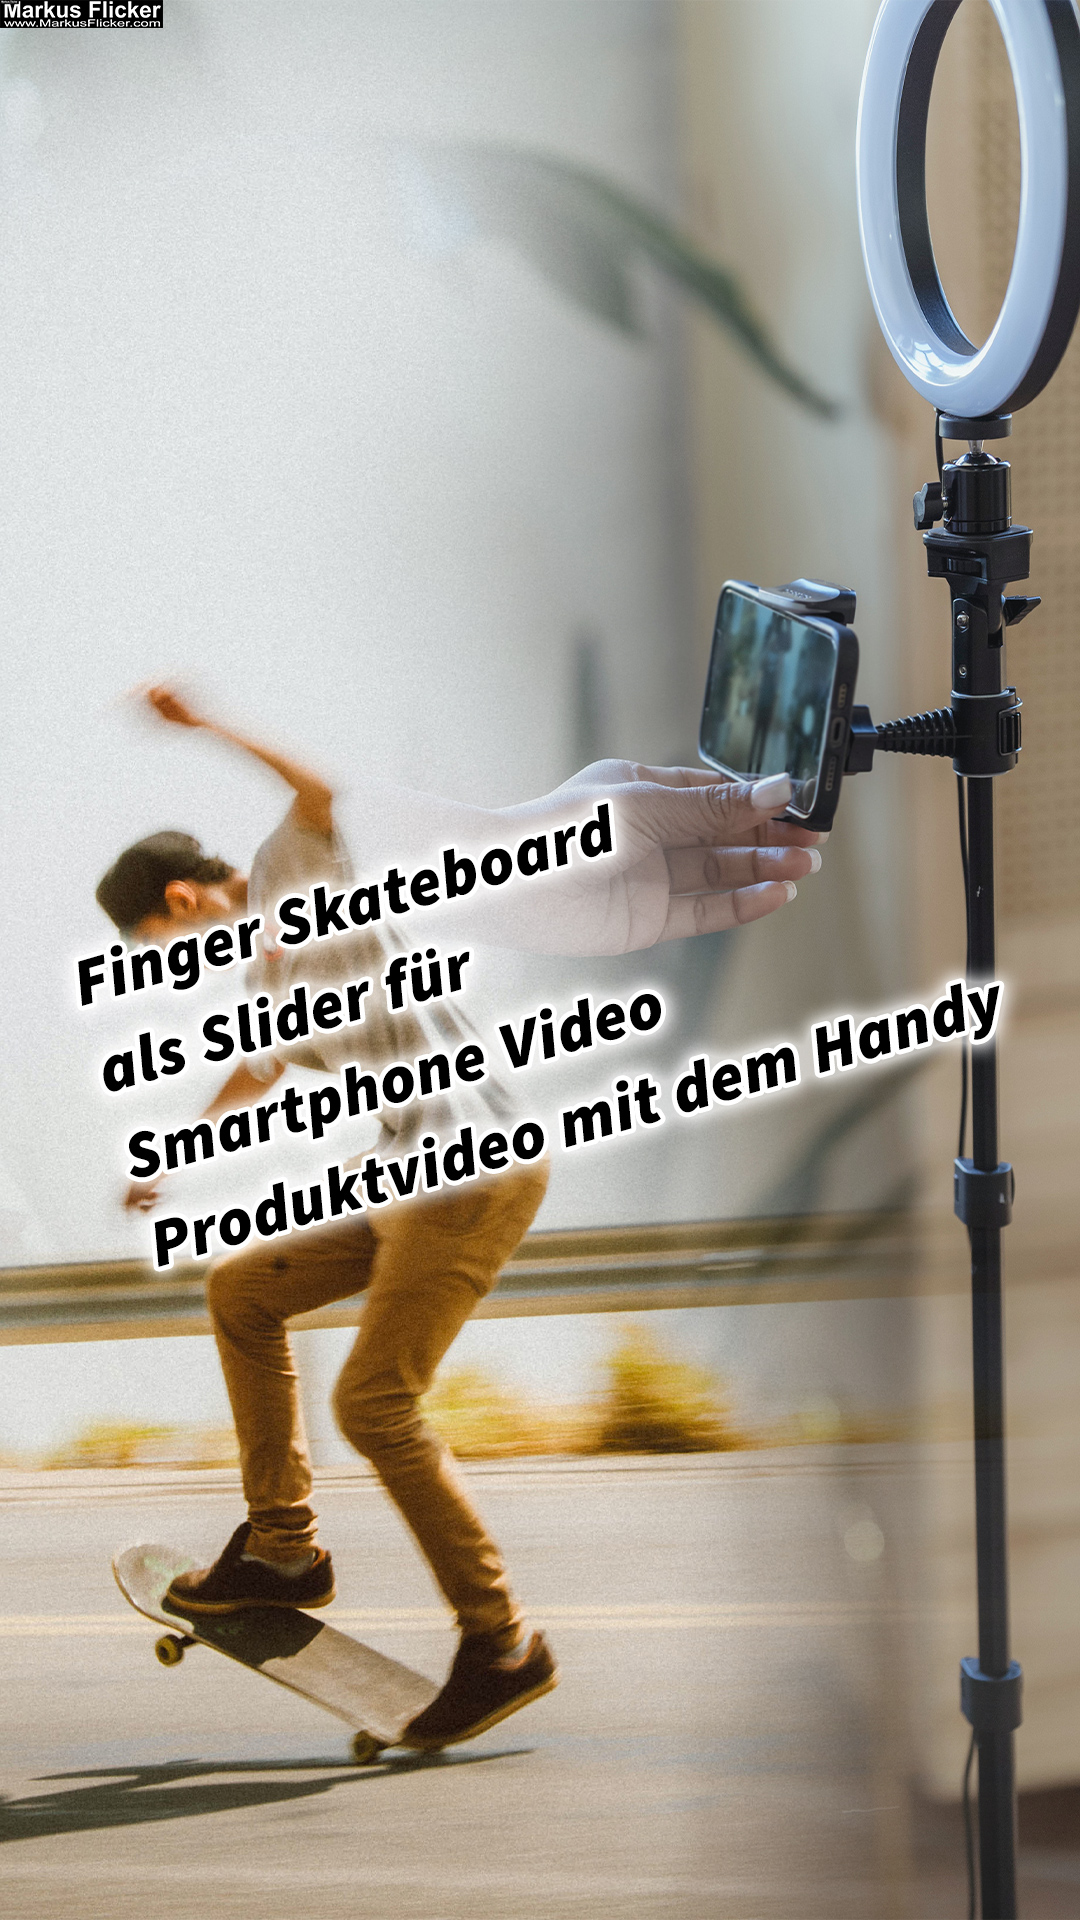 Finger Skateboard als Slider für Smartphone Video Produktvideo mit dem Handy